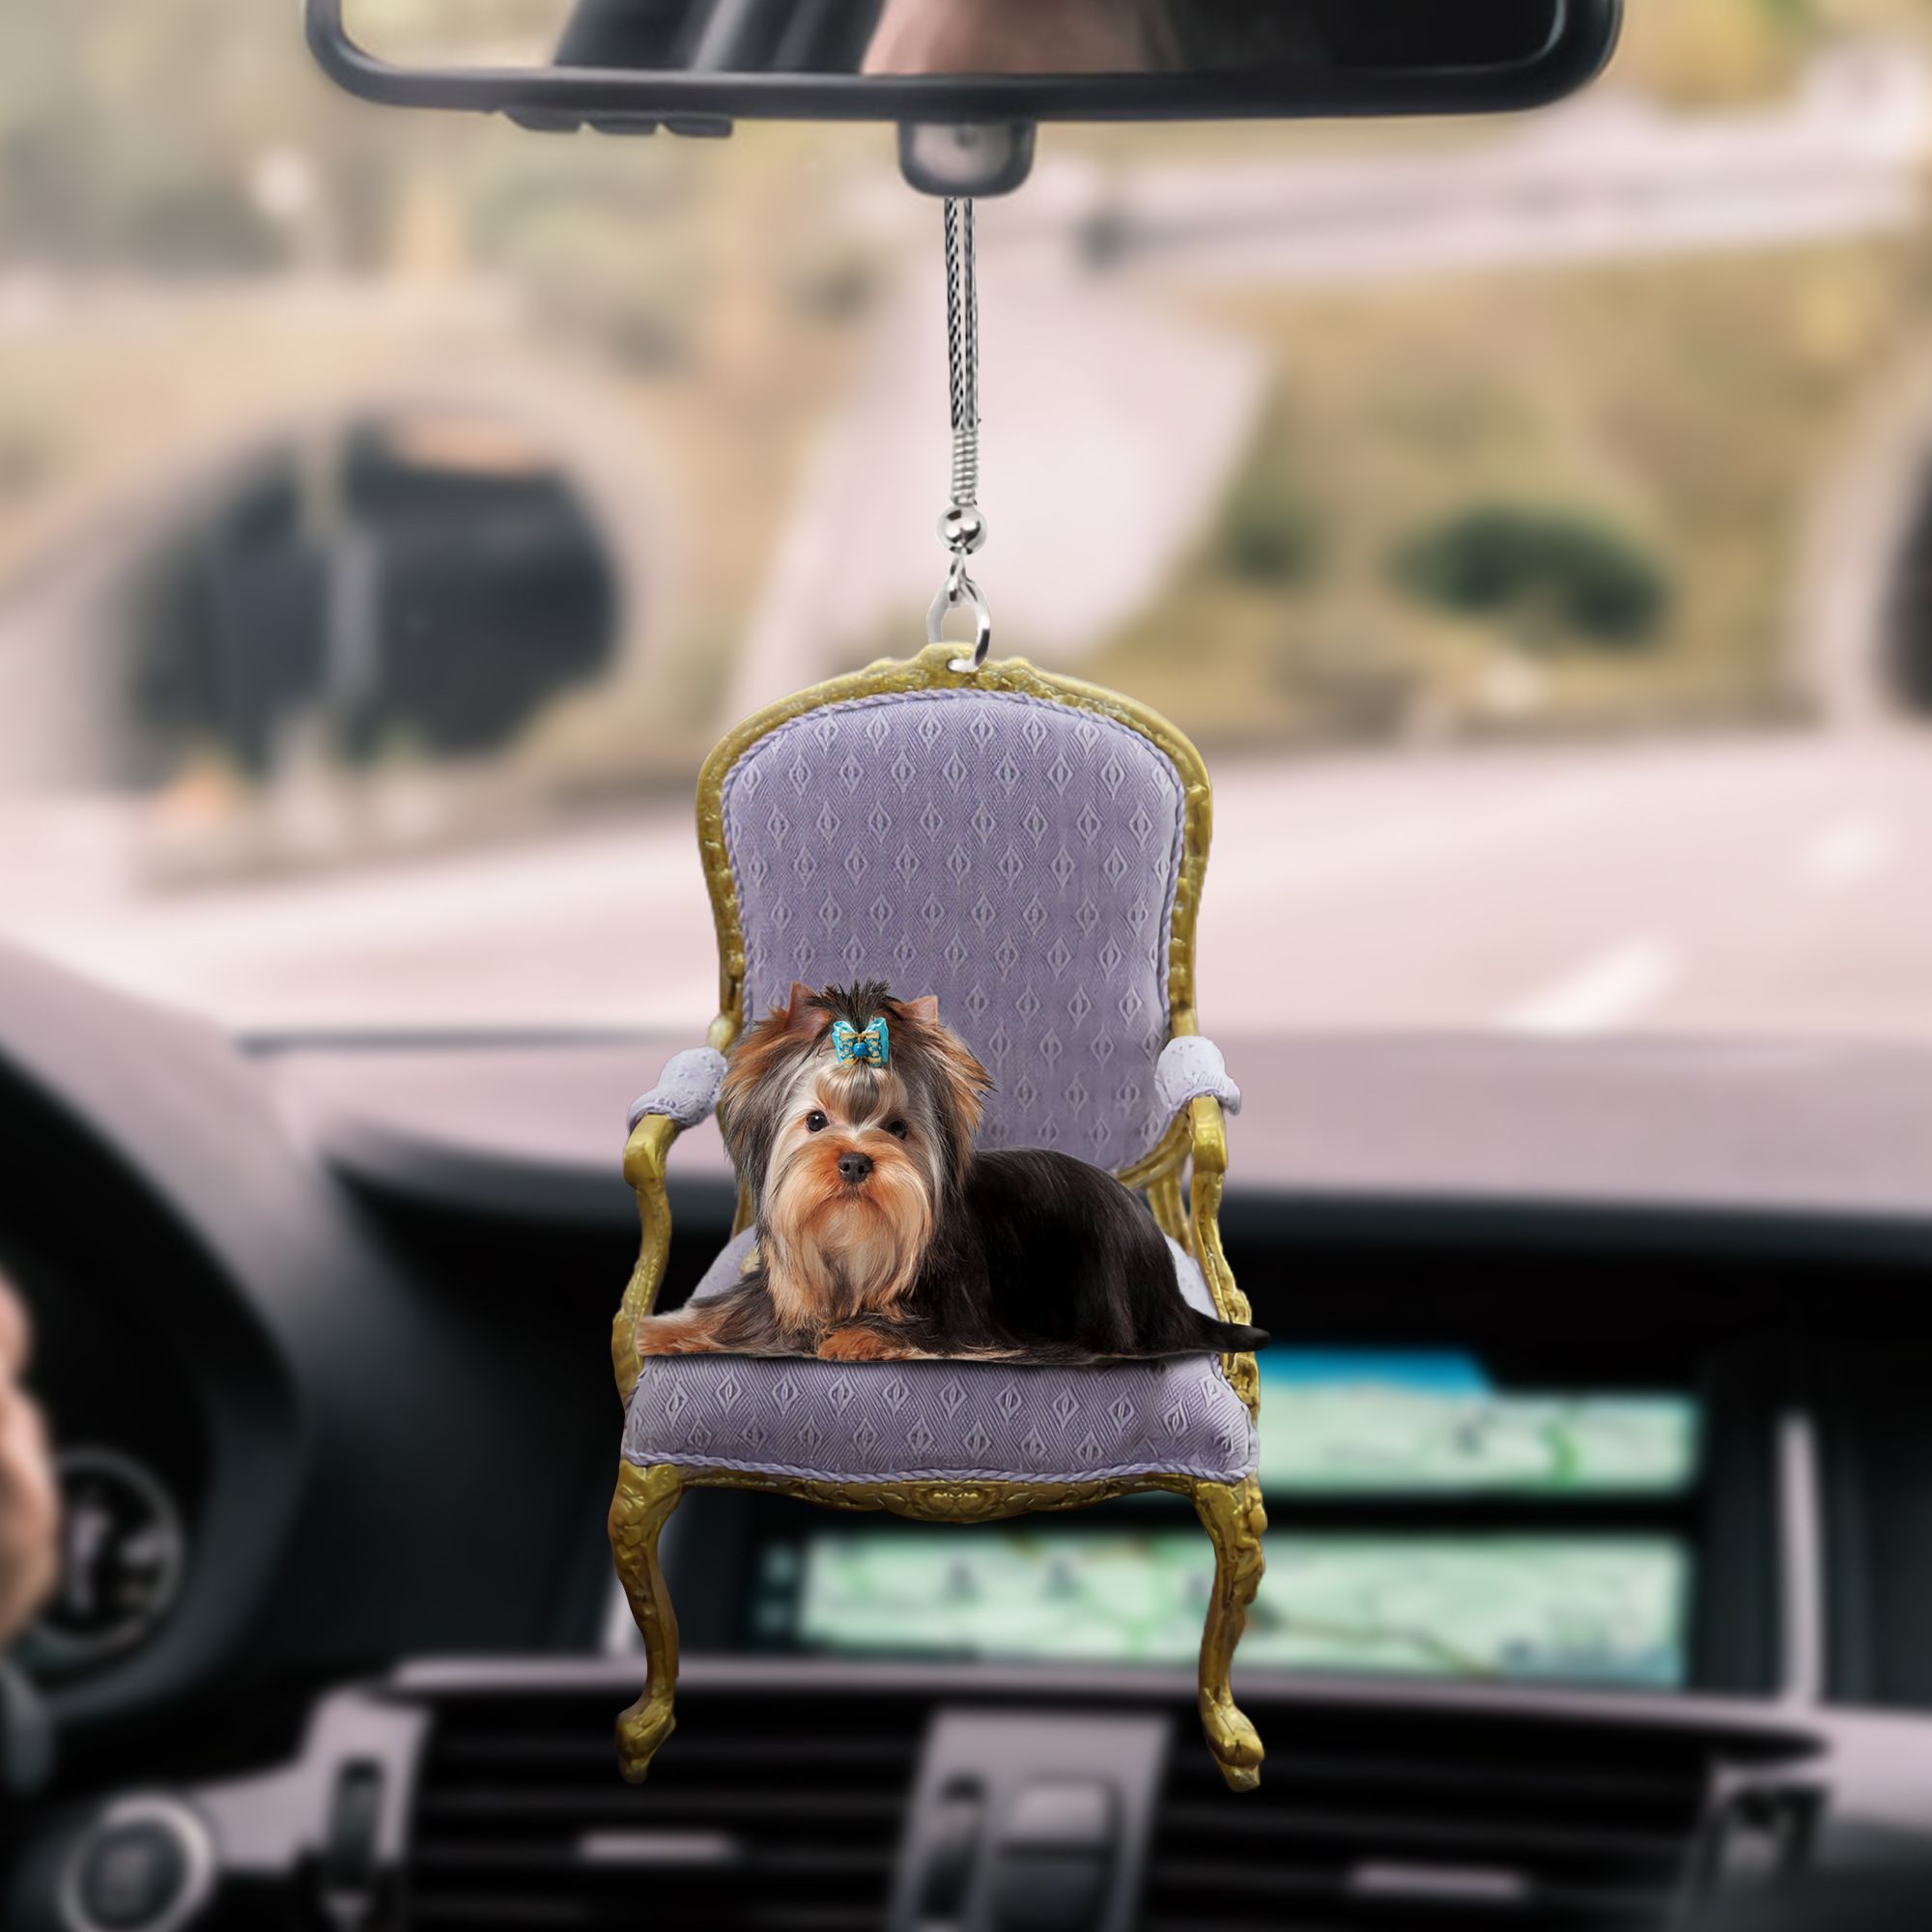 yorkshire-terrier-lying-ks227-ntt070997-nct-car-hanging-ornament